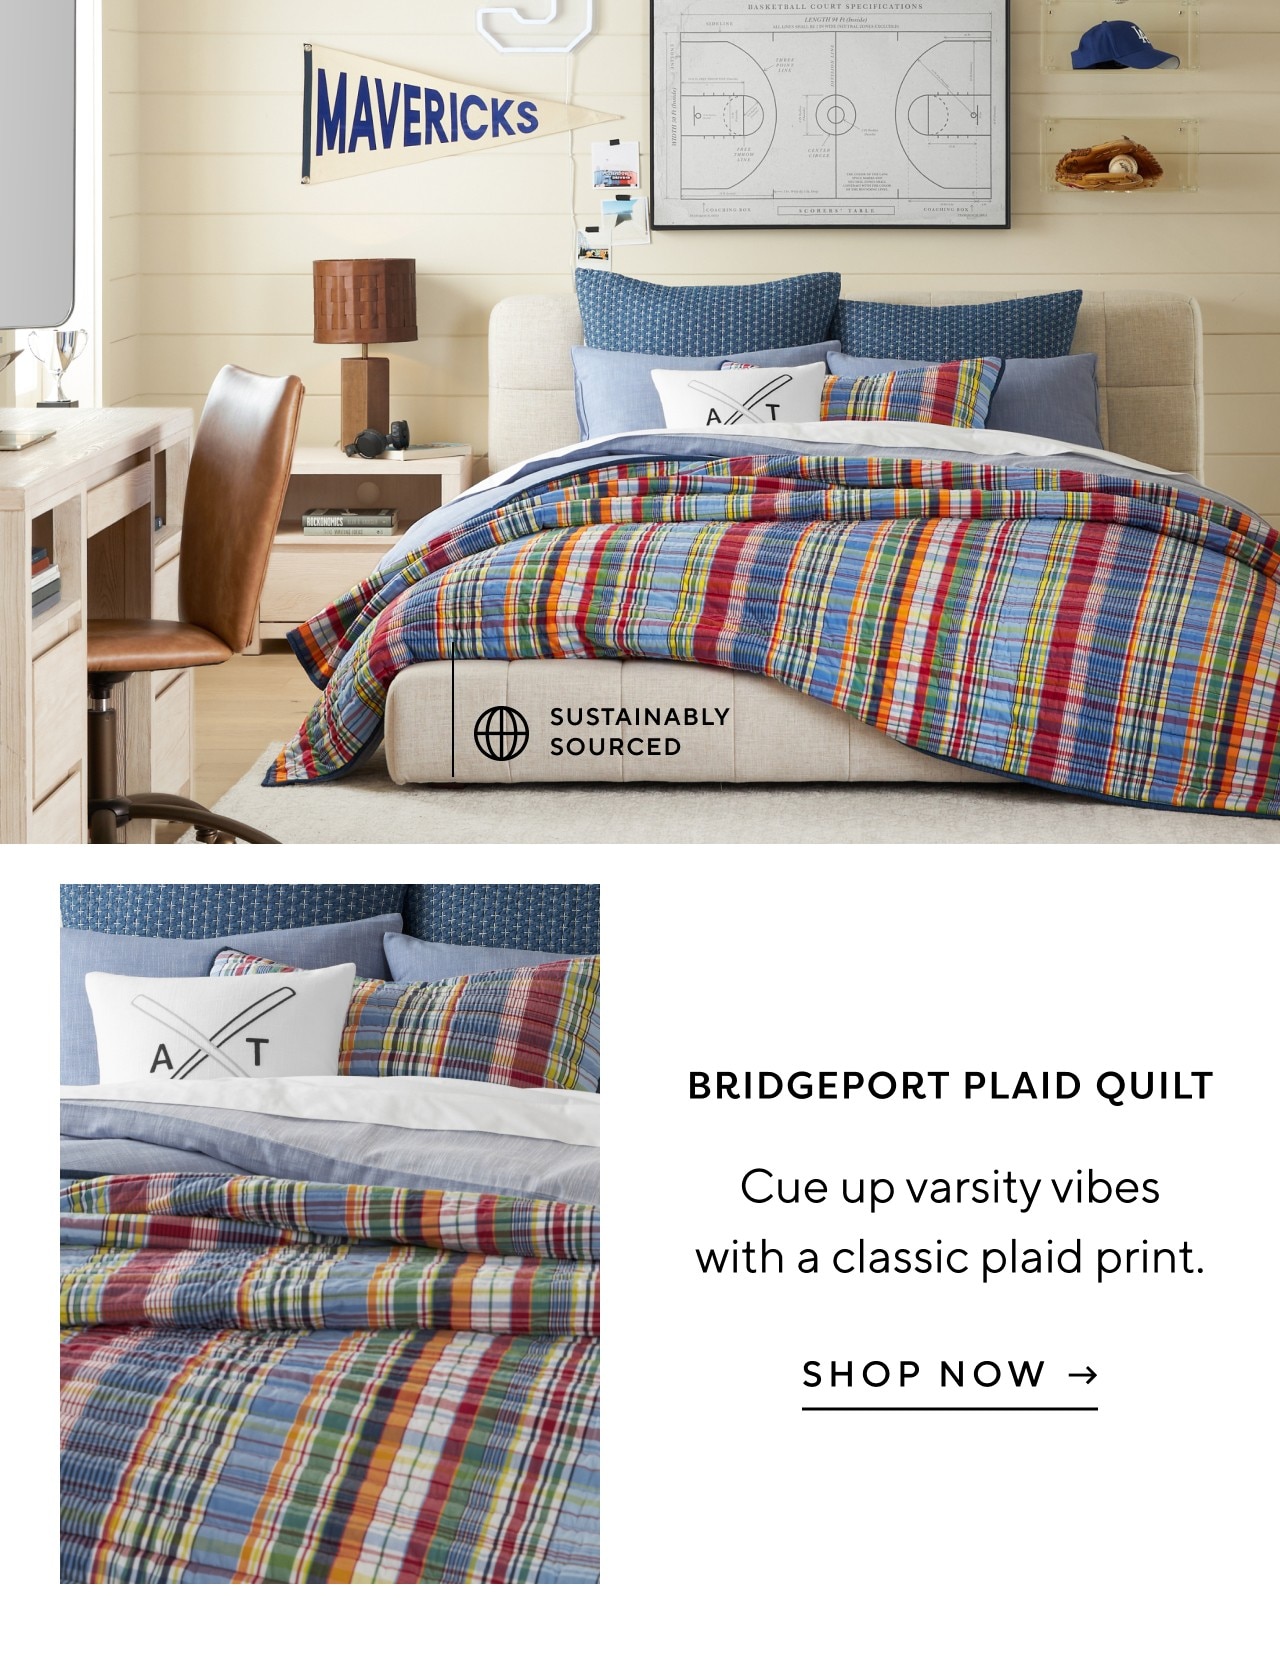 Bridgeport plaid quilt